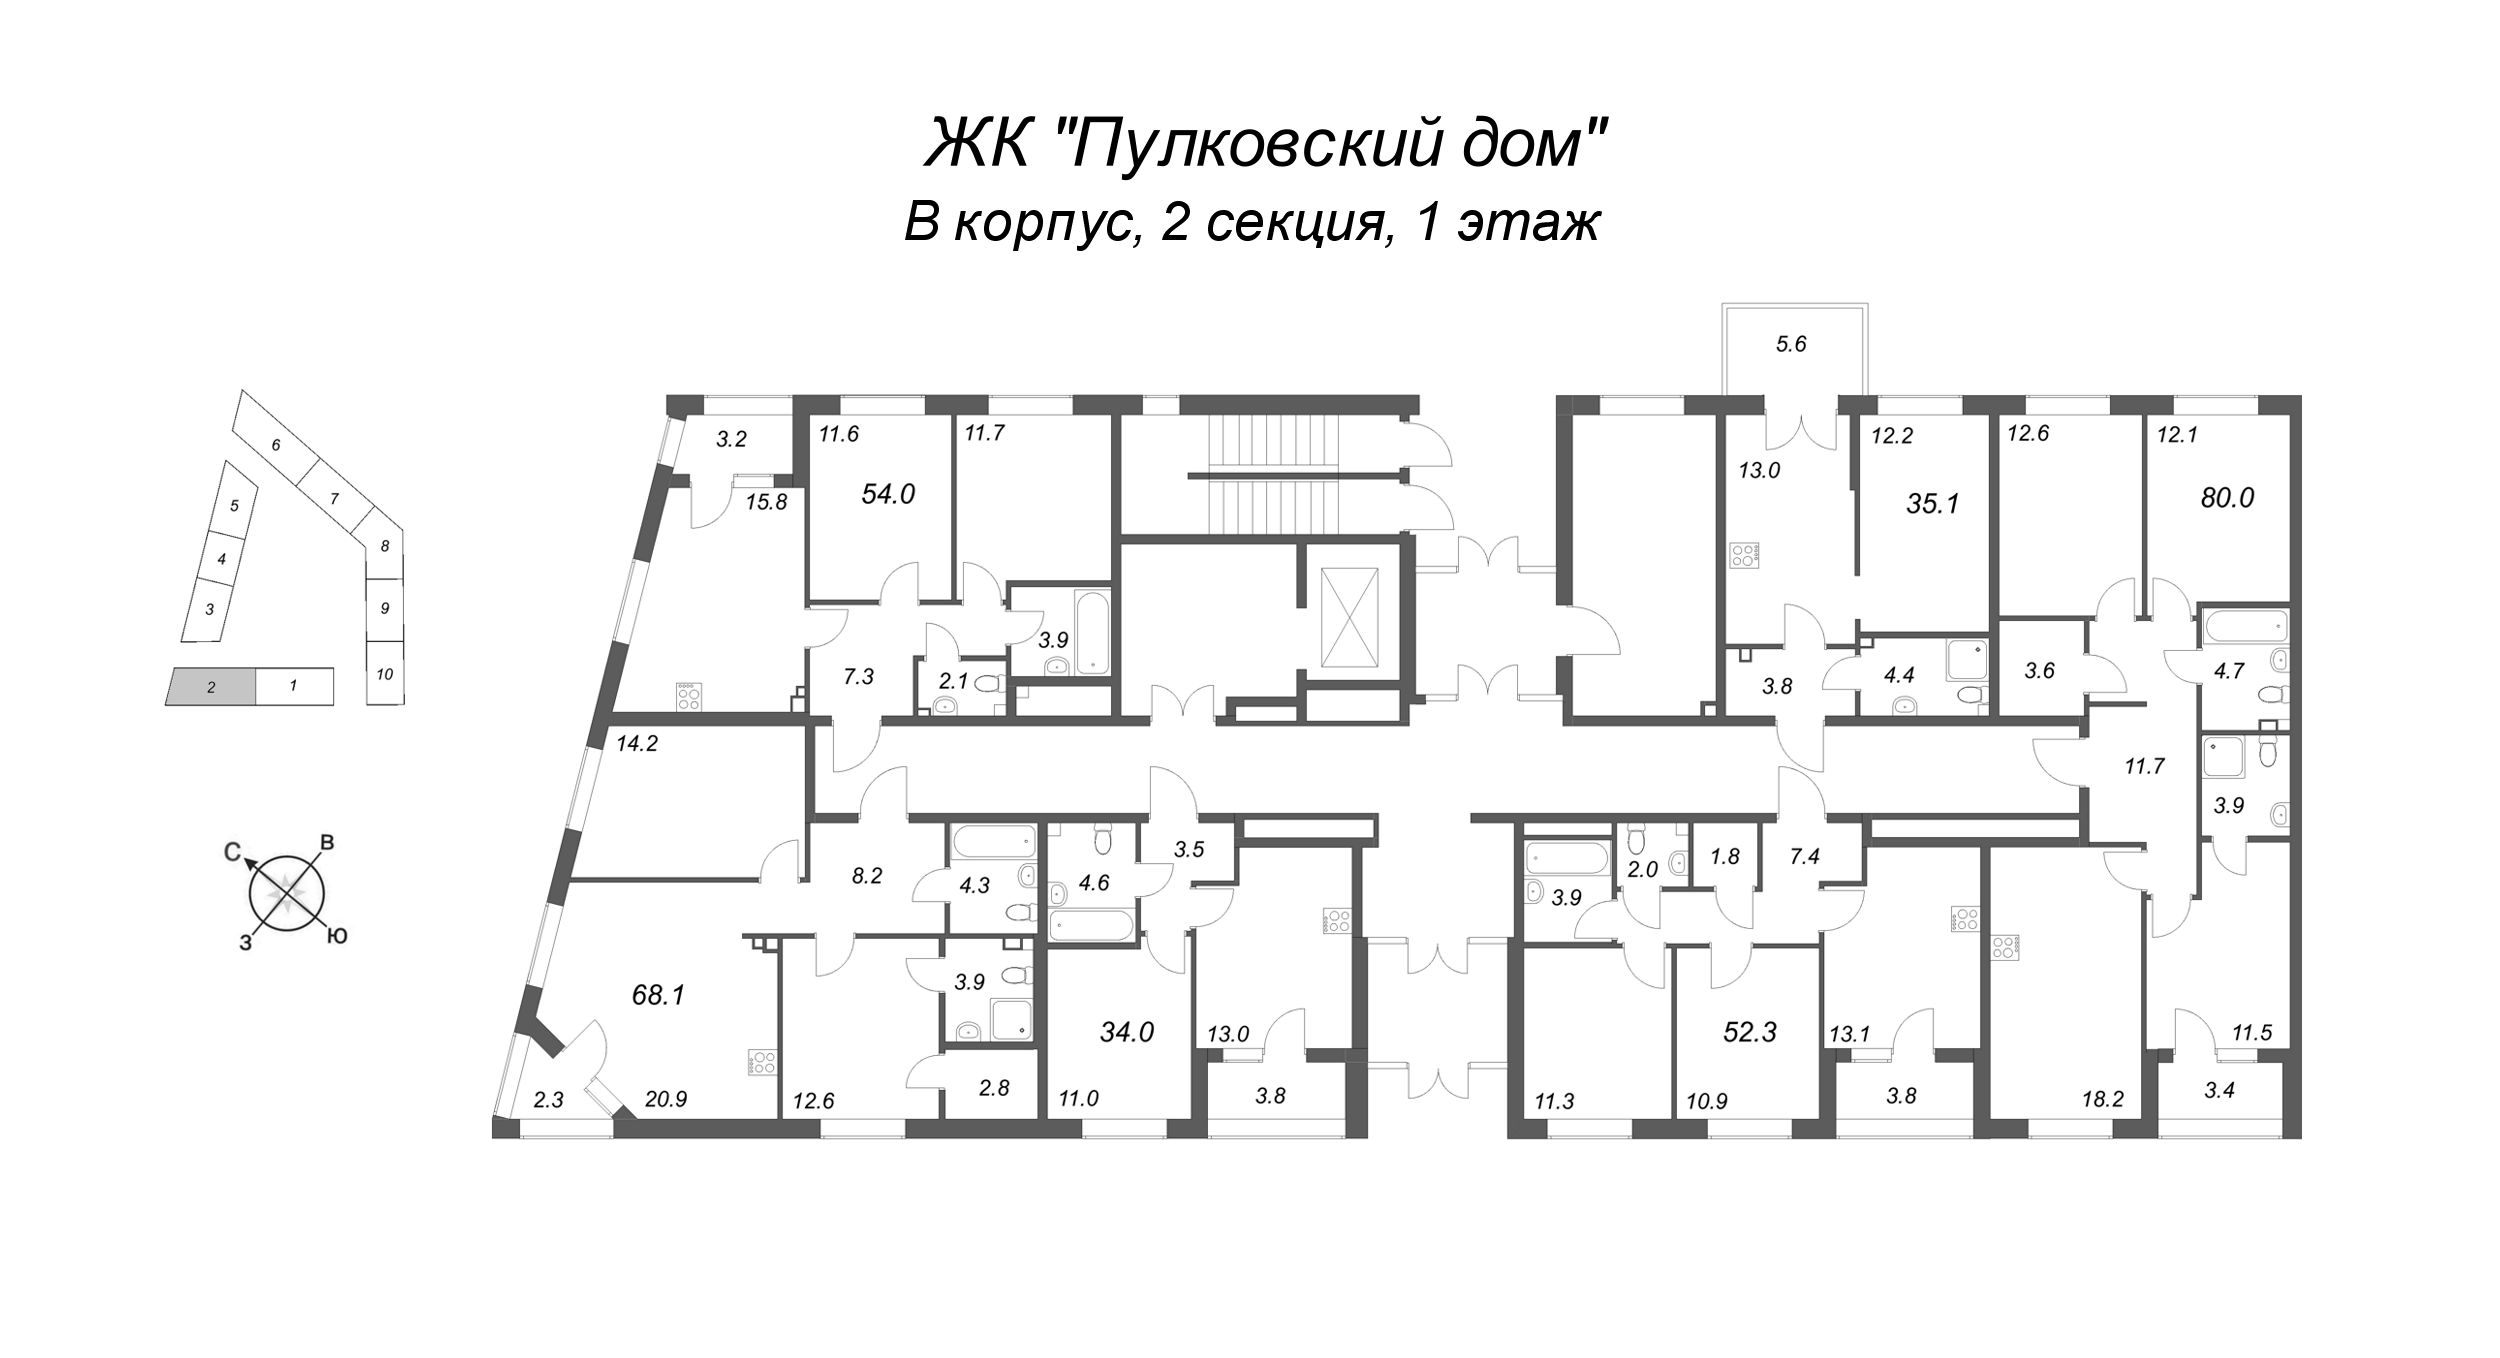 2-комнатная квартира, 52.3 м² в ЖК "Пулковский дом" - планировка этажа